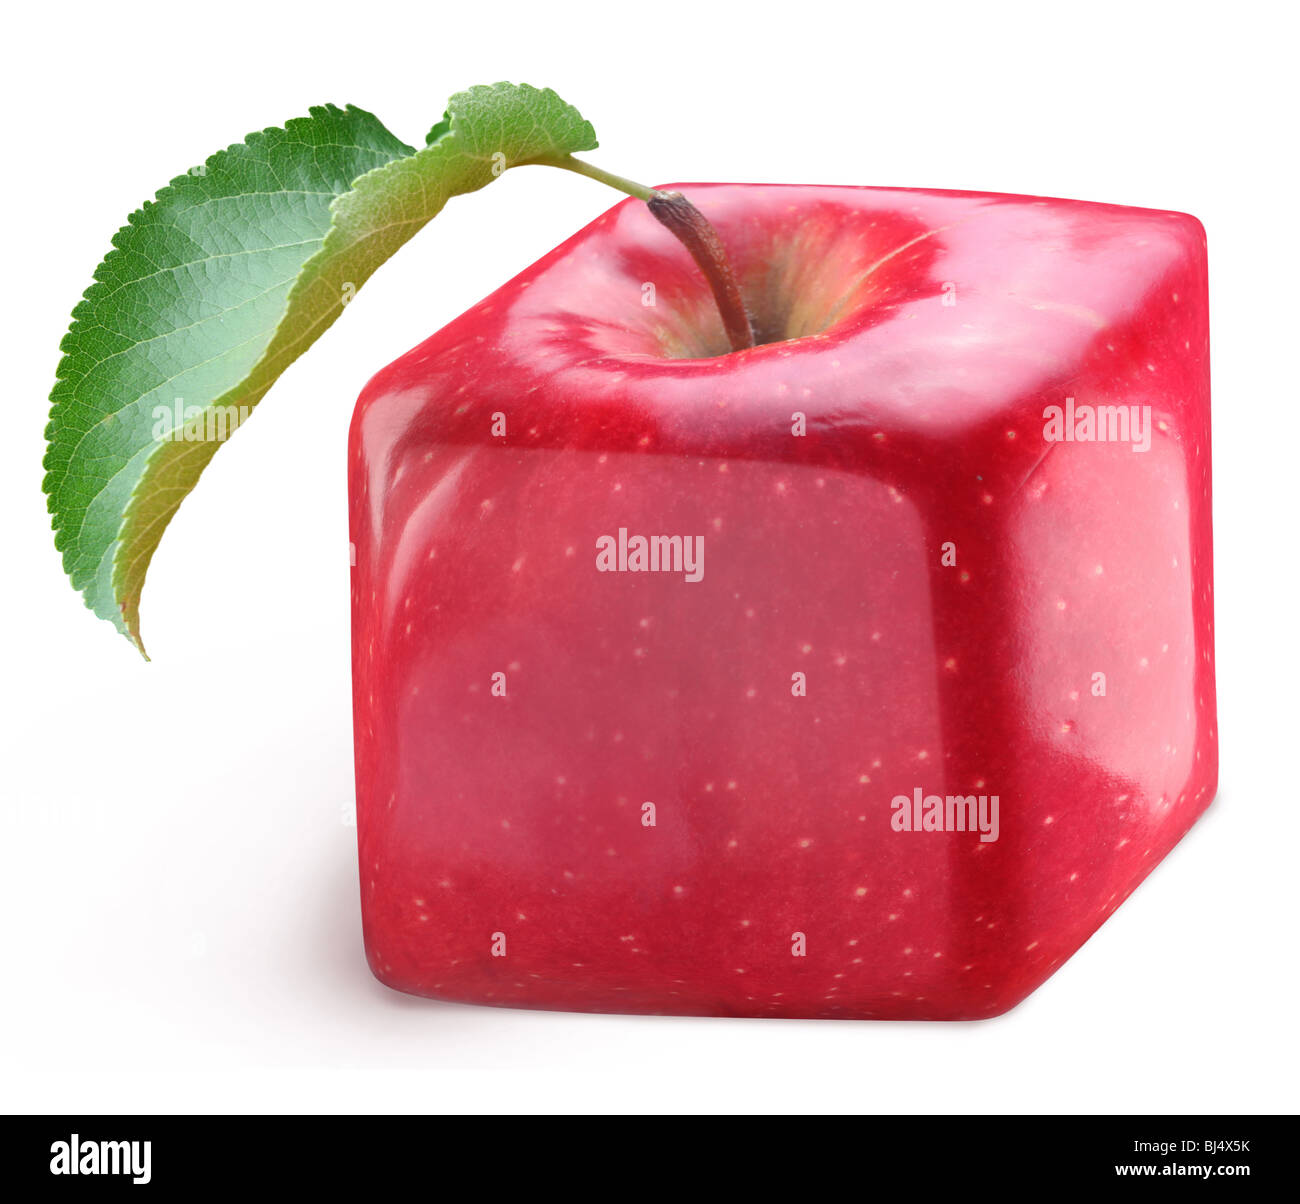 Würfel Apfel auf einem weißen Hintergrund Stockfoto